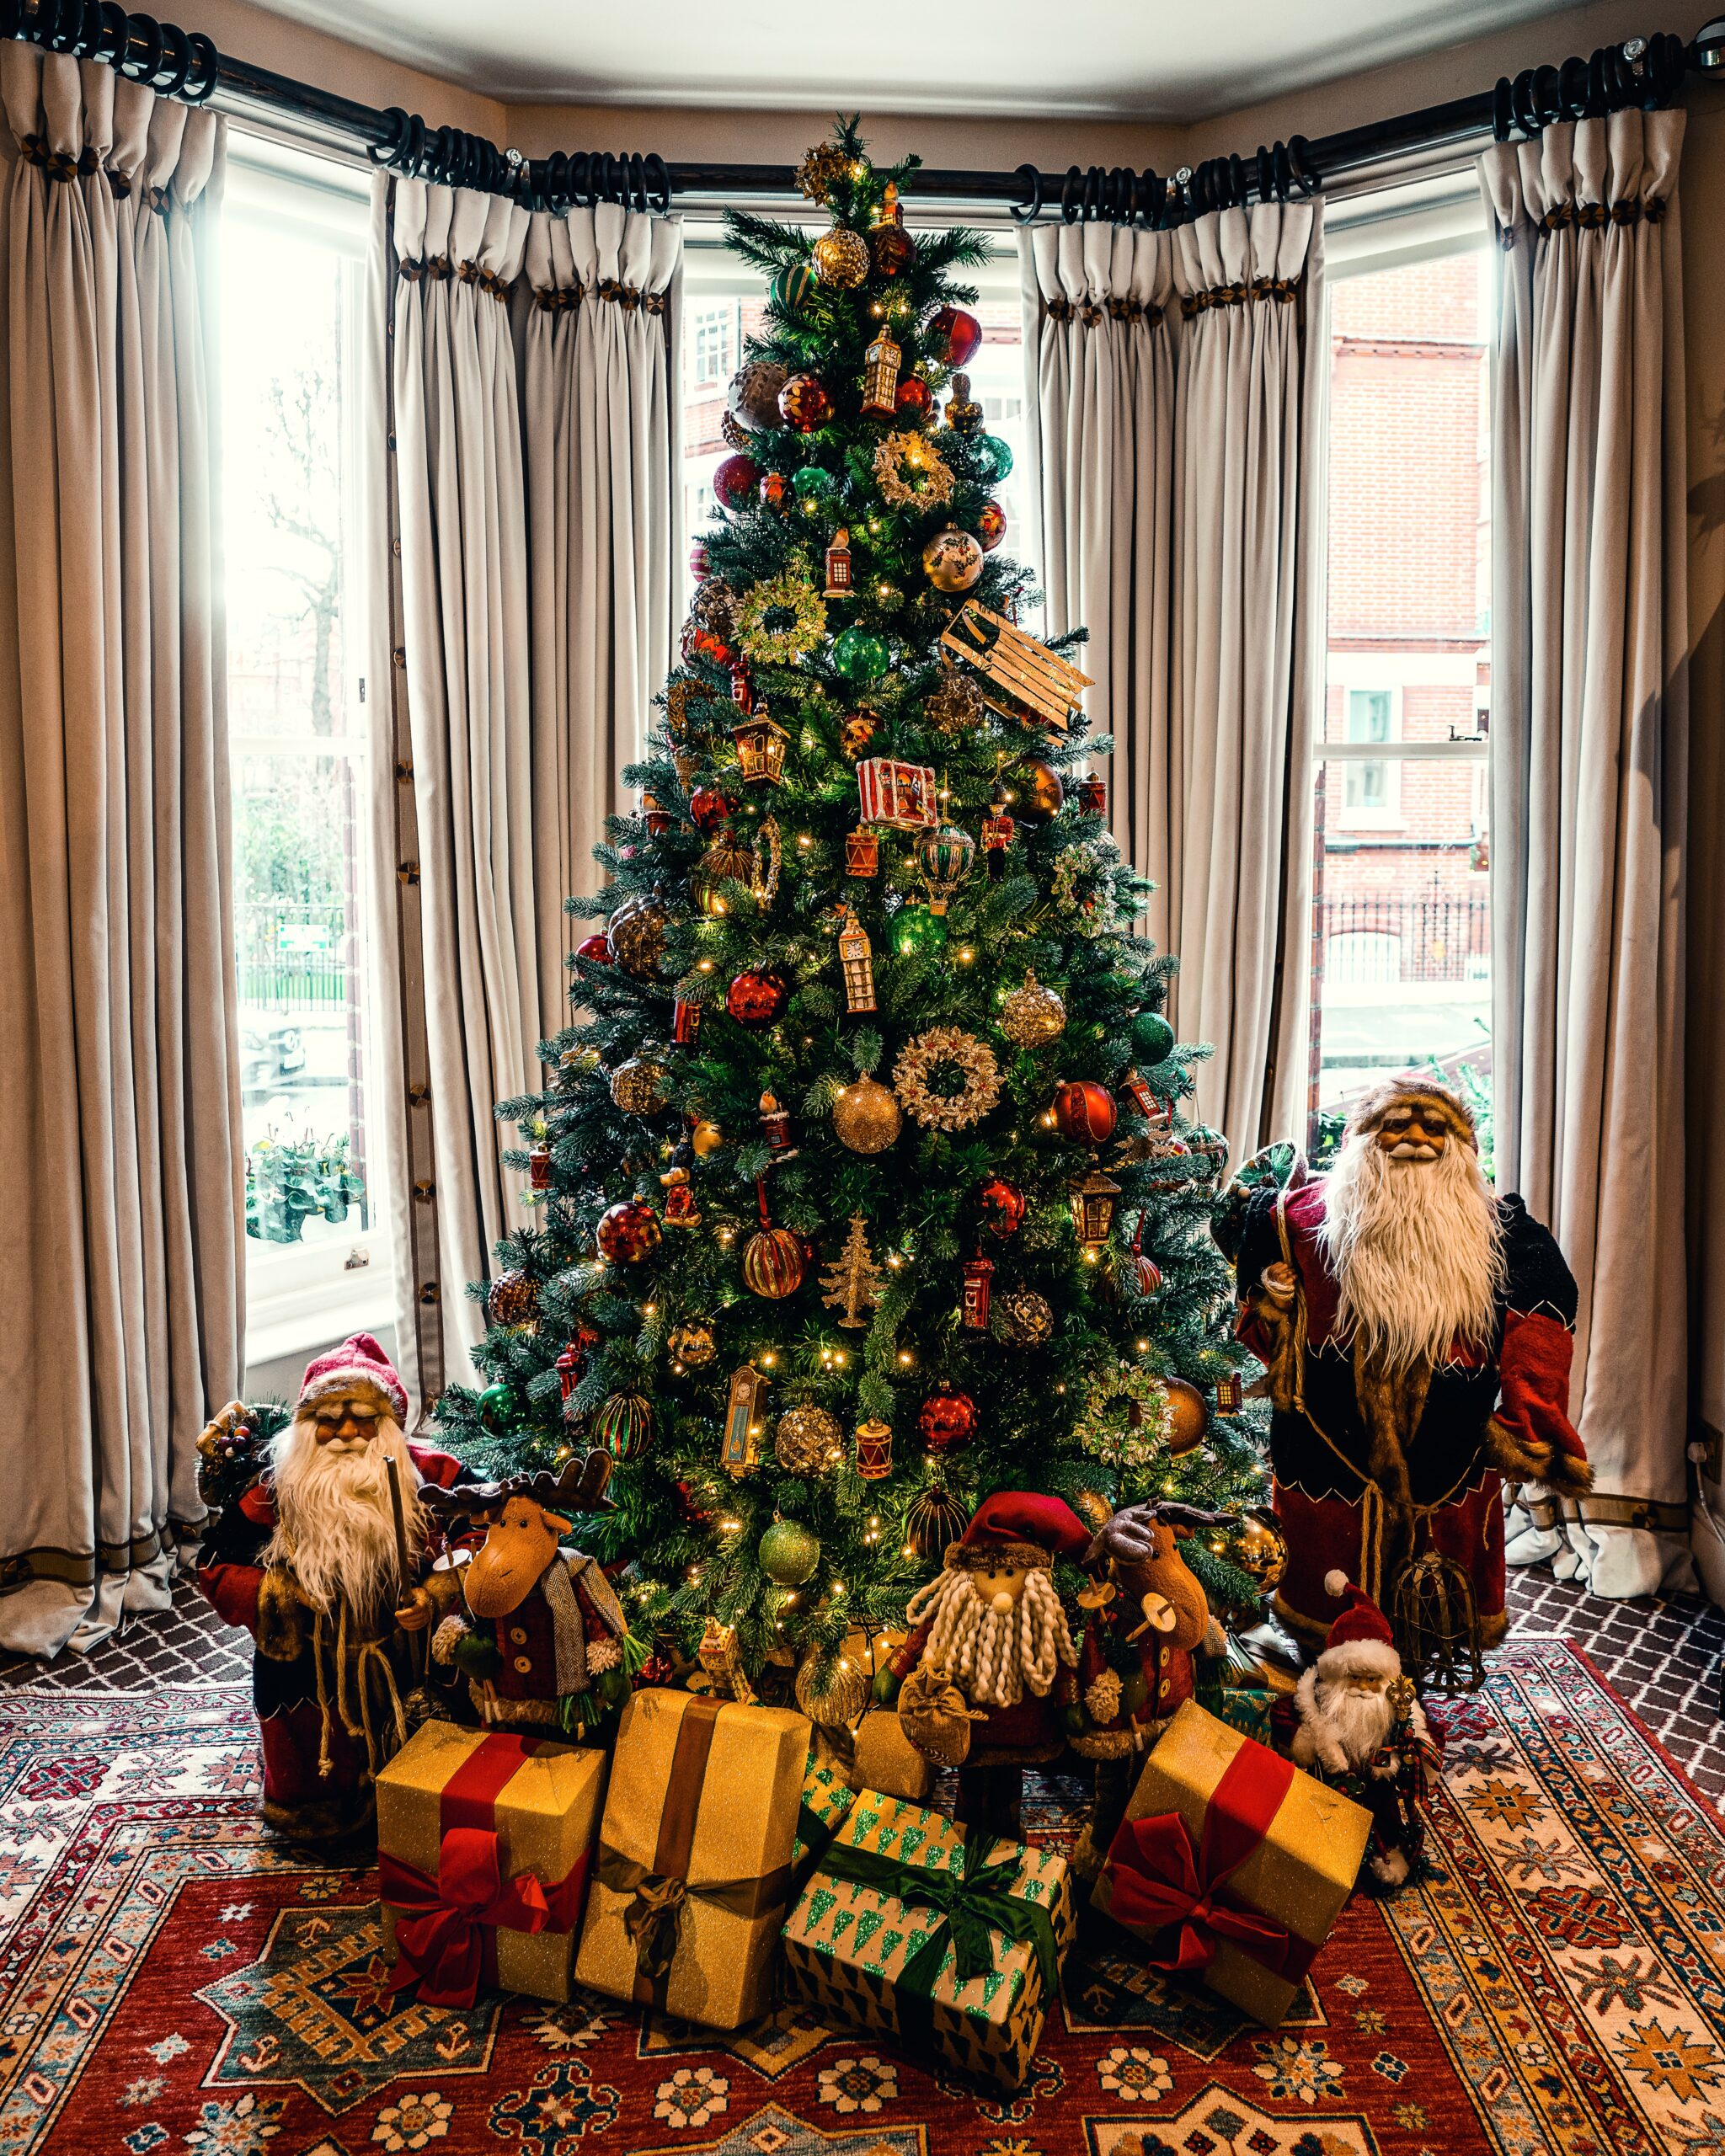 Πώς να επιλέξεις τους σωστούς χρωματικούς συνδυασμούς για το χριστουγεννιάτικο δέντρο σου